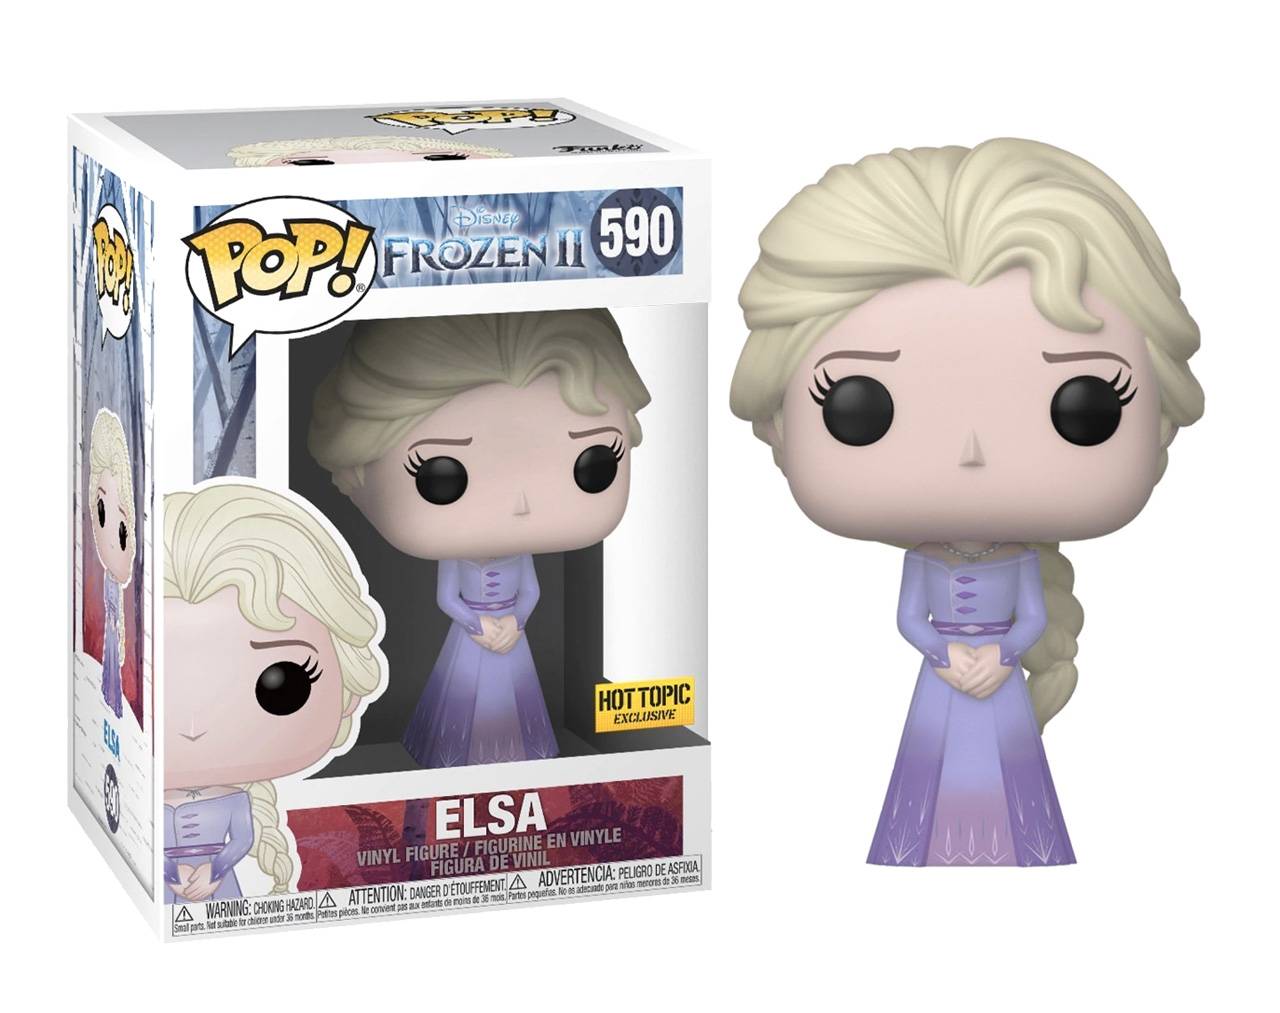 Elsa (Frozen 2 Exclusive) Pop! Vinyl